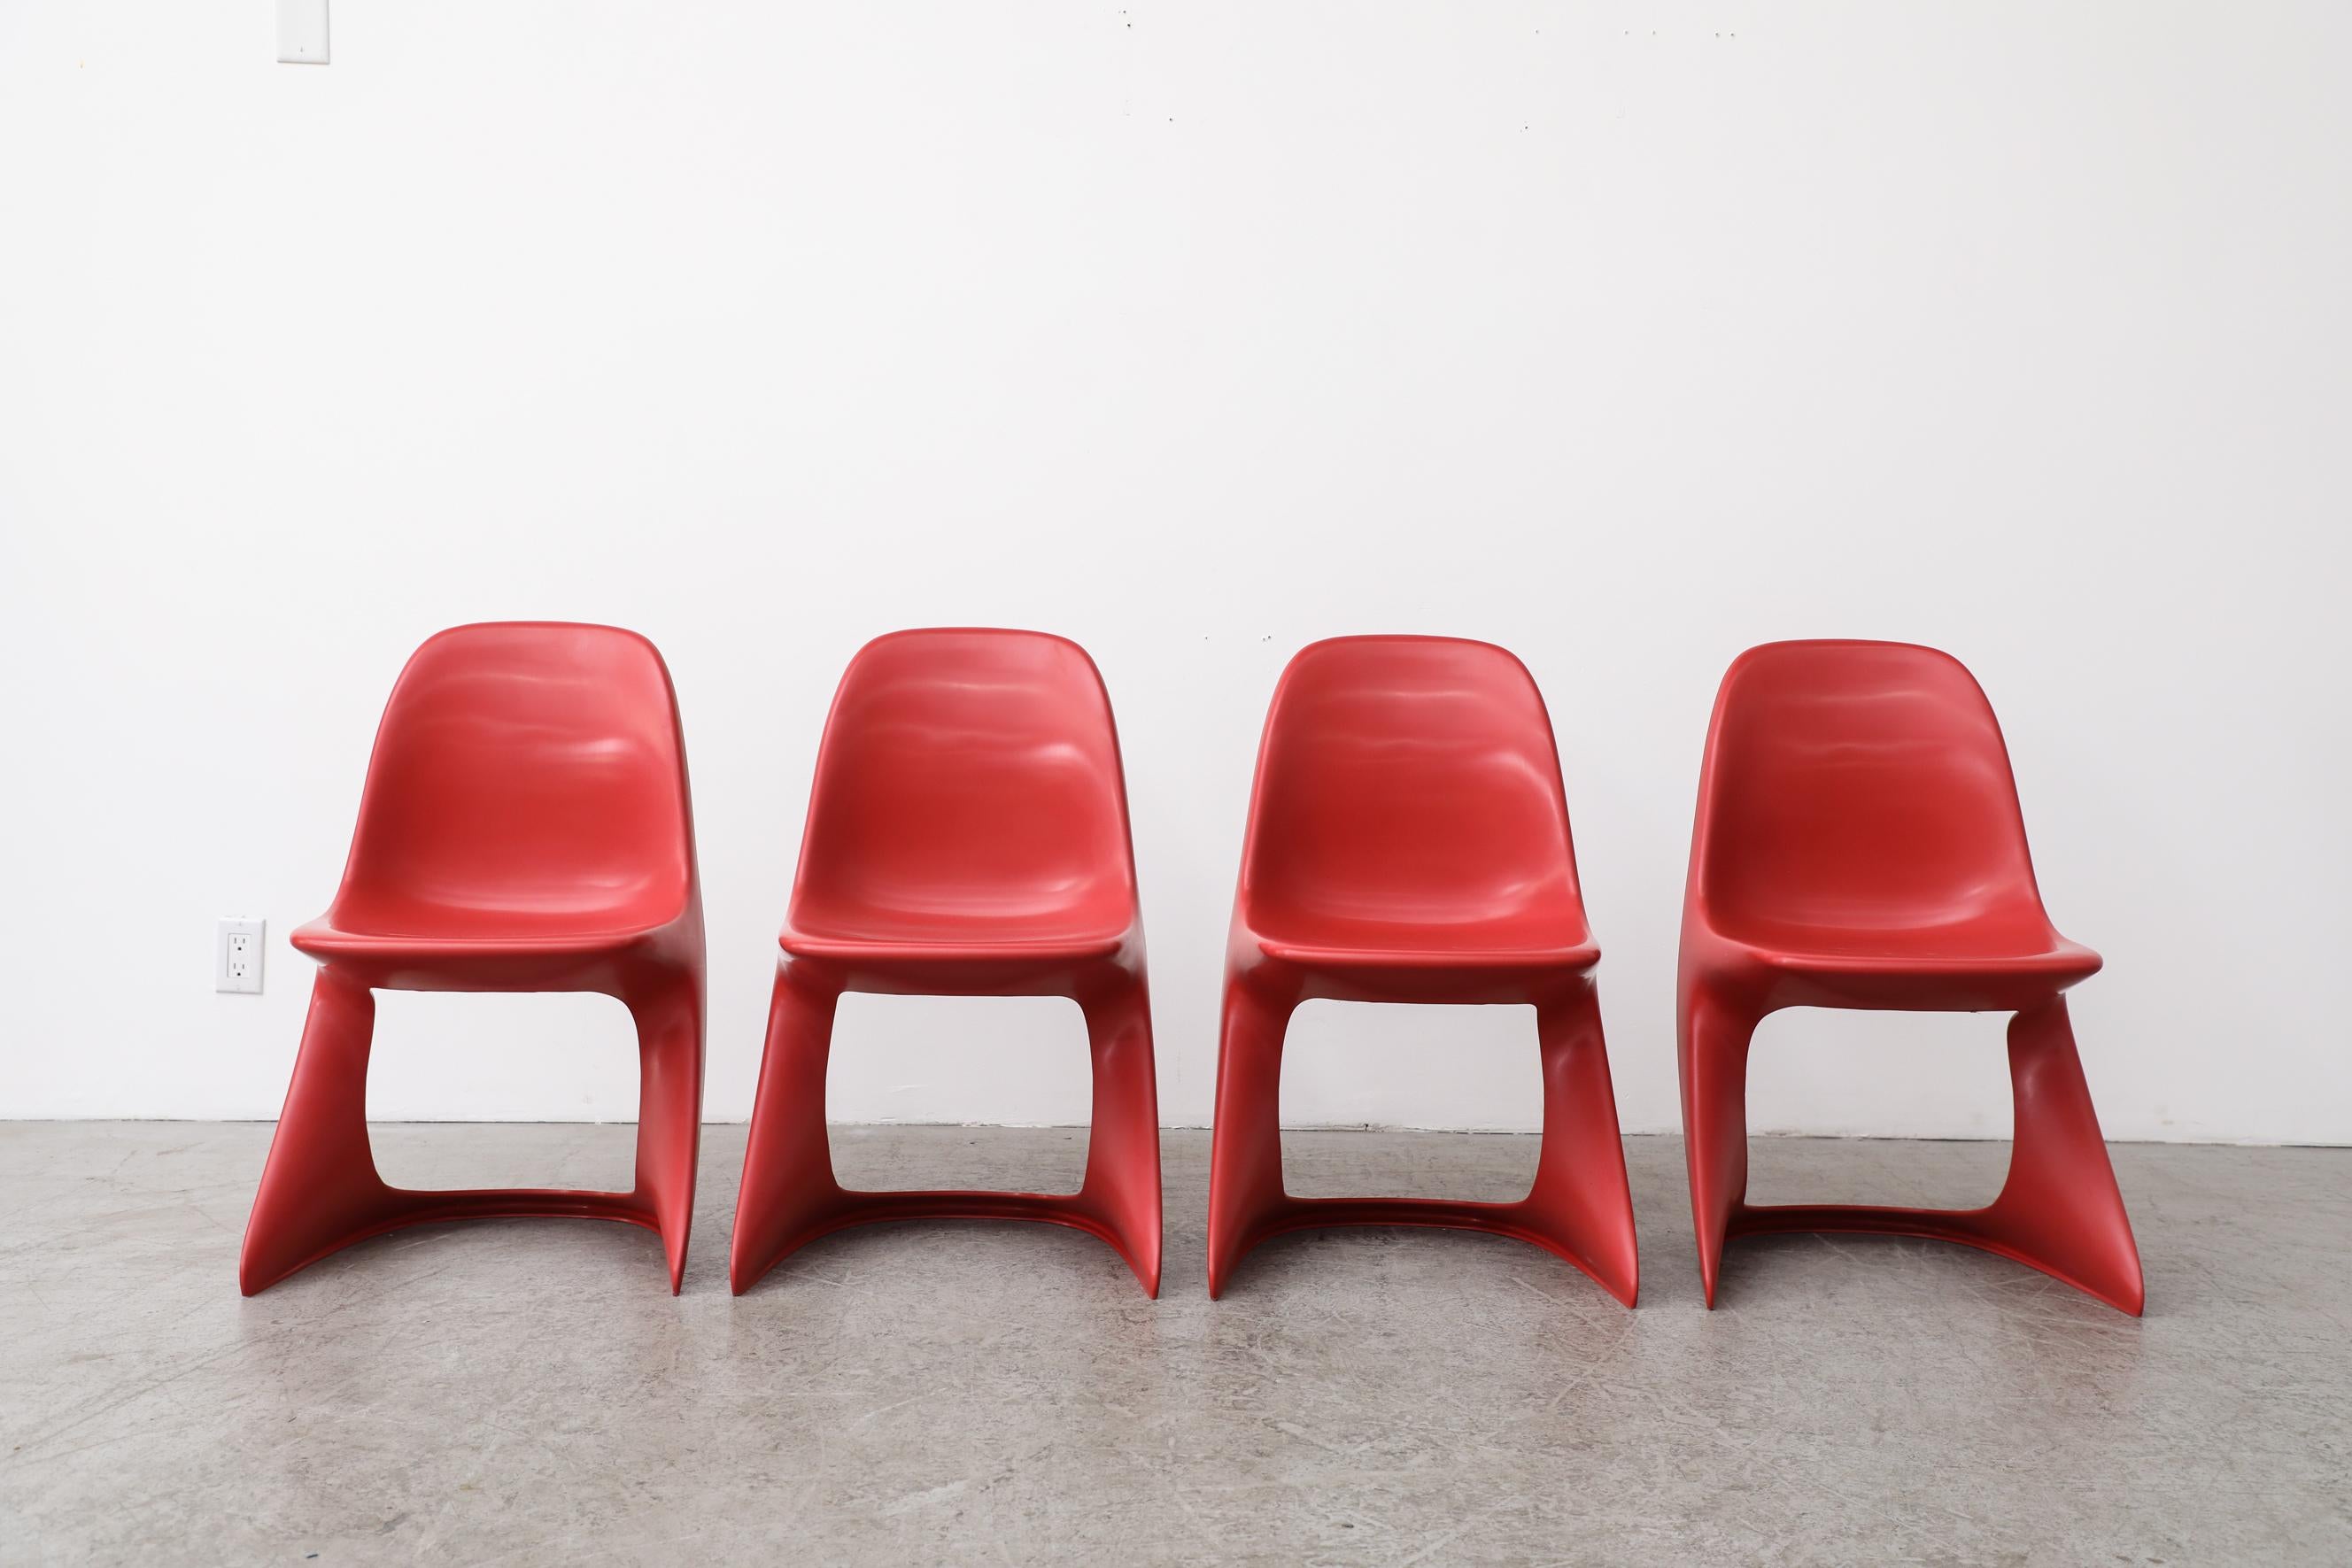 Satz von vier stapelbaren Casalino Stühlen aus rotem Kunststoff aus dem Weltraumzeitalter der 1970er Jahre von Alexander Begge. Diese niedlichen kleinen Stühle in Kindergröße lassen sich leicht stapeln. Originalzustand mit sichtbaren